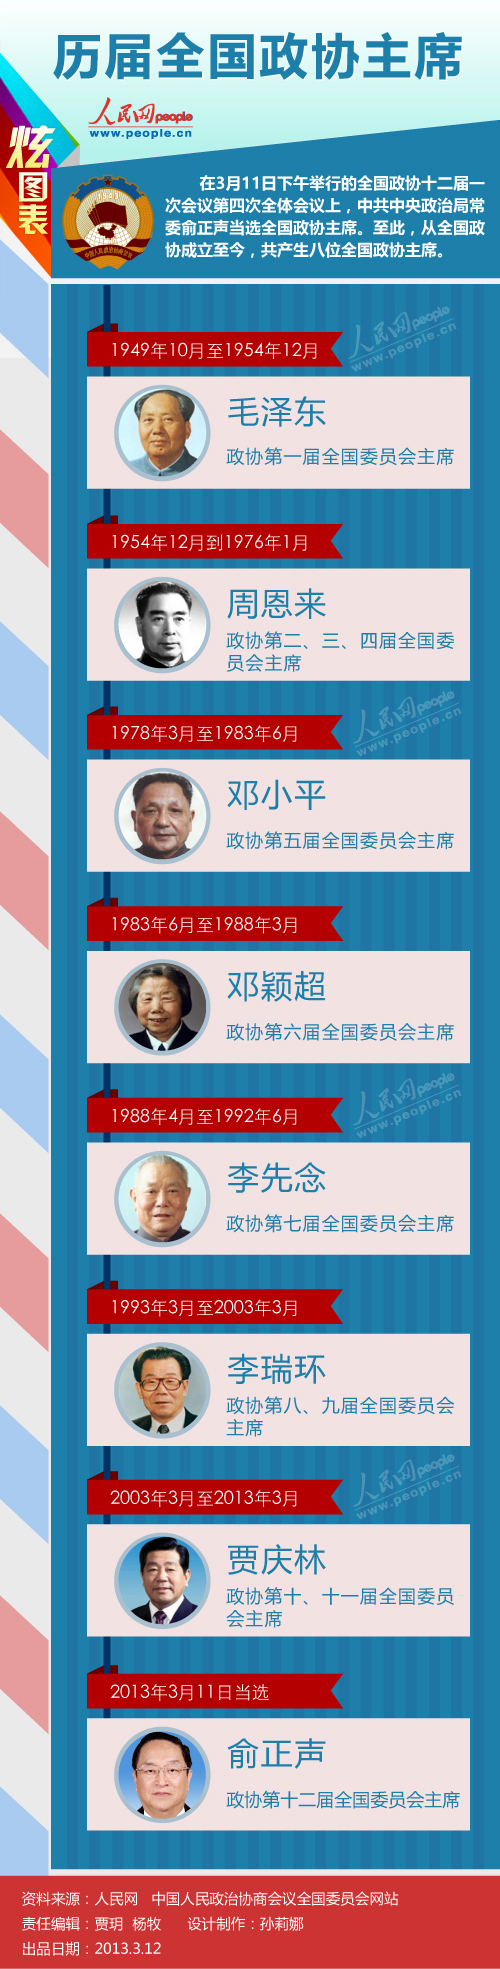 炫图表第9期:历届全国政协主席--中国政协新闻网